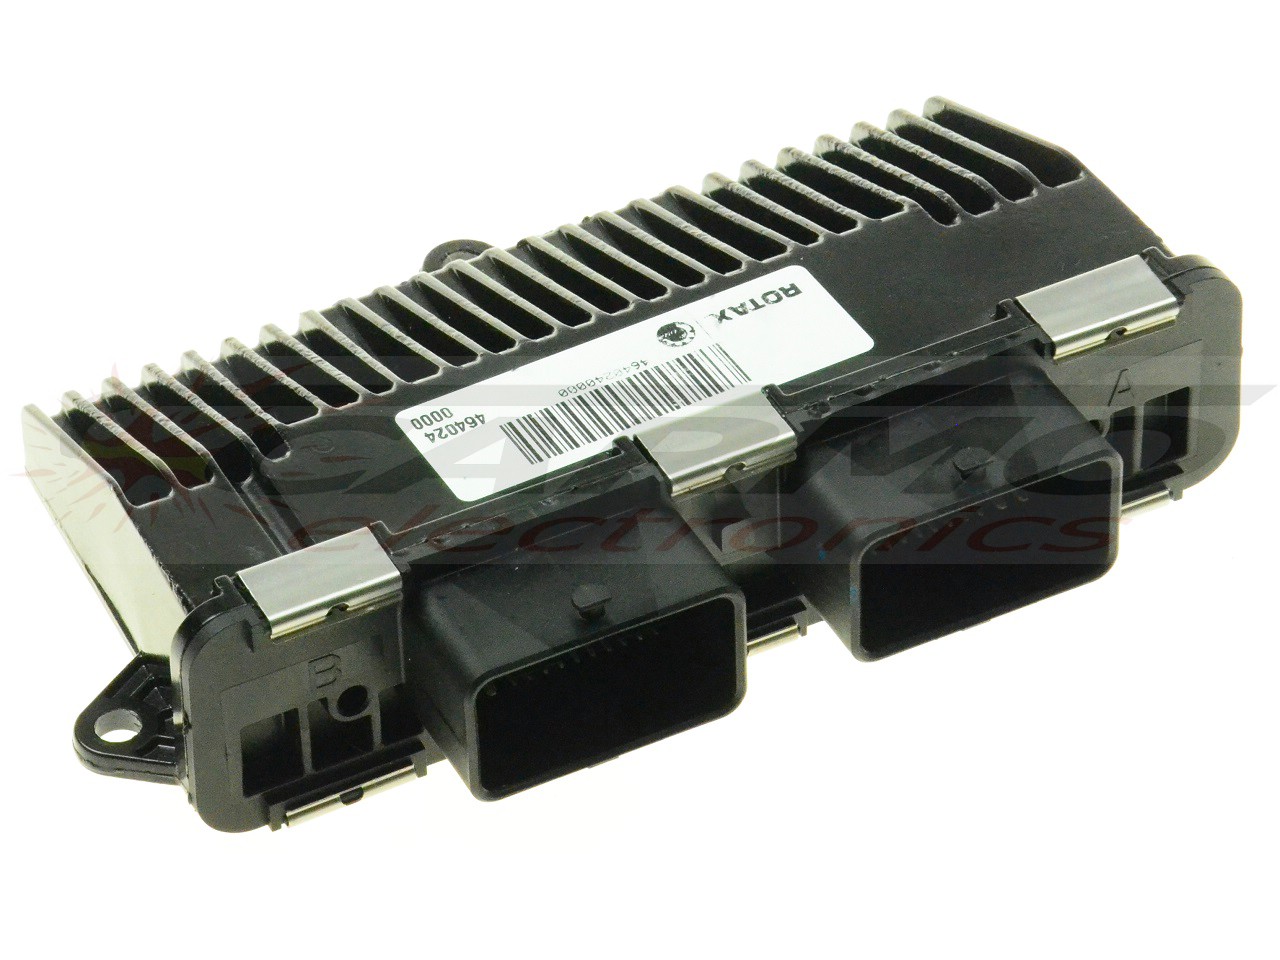 CAN AM Ryker Outlander Renegade ECU ECM CDI controlador de caixa preta de computador (Rotax Bosch 666064, 1039S82086)